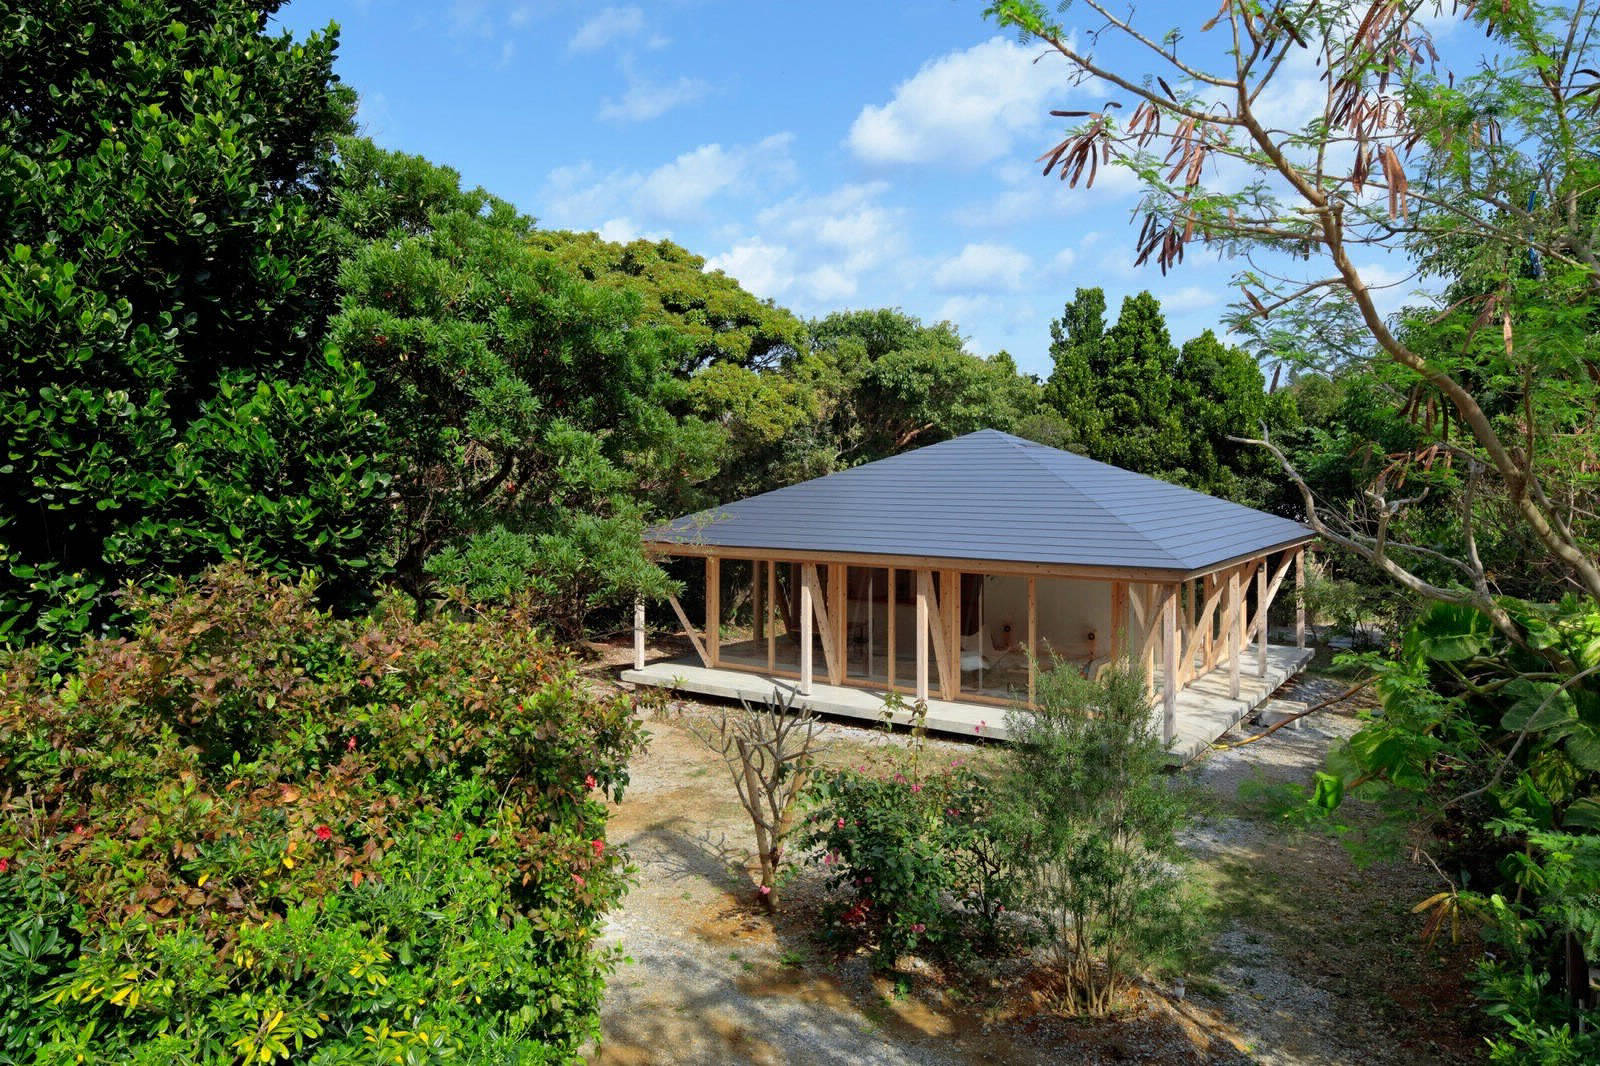 Уютный дом в посёлке японской префектуры Окинава